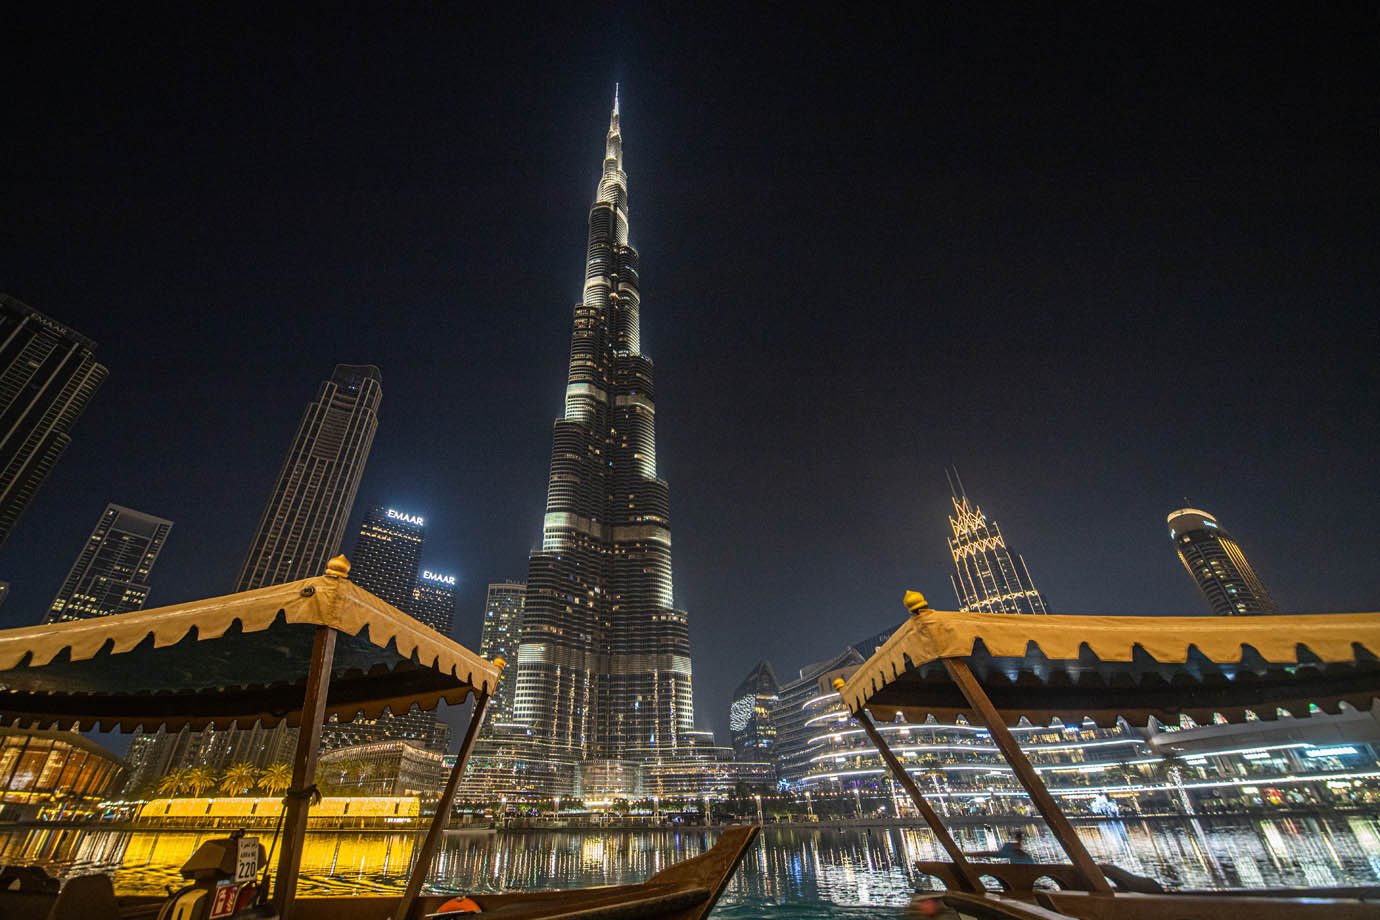 Vista do Burj Khalifa no Dubai Mall

Foto: Leandro Fonseca
Data: dezembro 2023